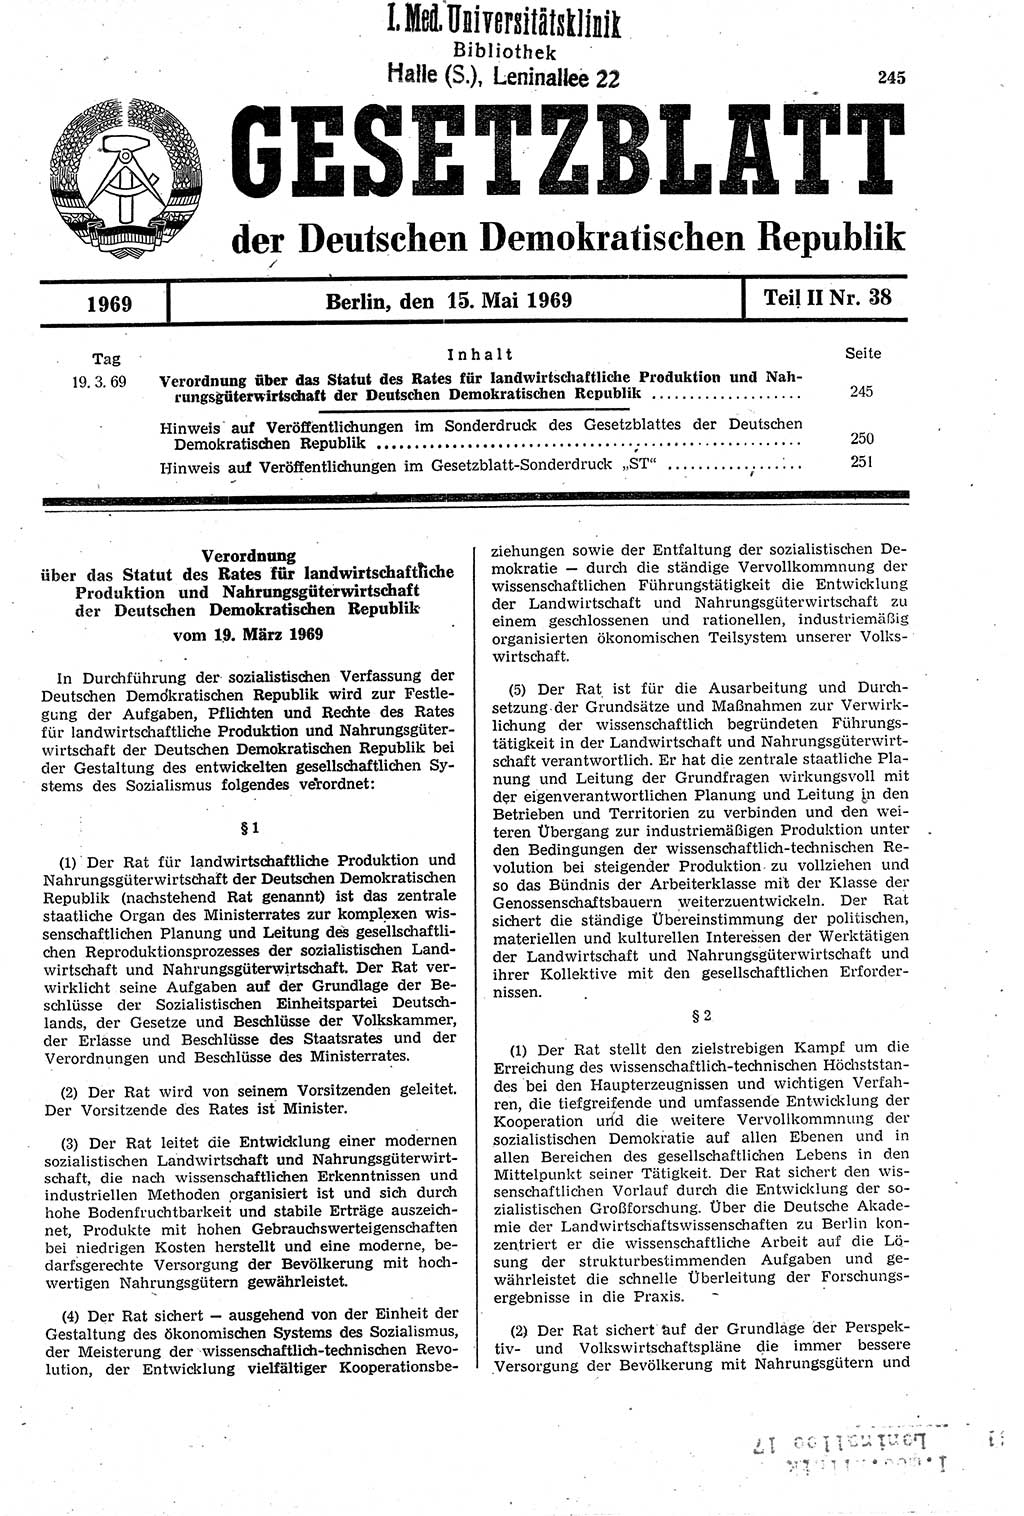 Gesetzblatt (GBl.) der Deutschen Demokratischen Republik (DDR) Teil ⅠⅠ 1969, Seite 245 (GBl. DDR ⅠⅠ 1969, S. 245)